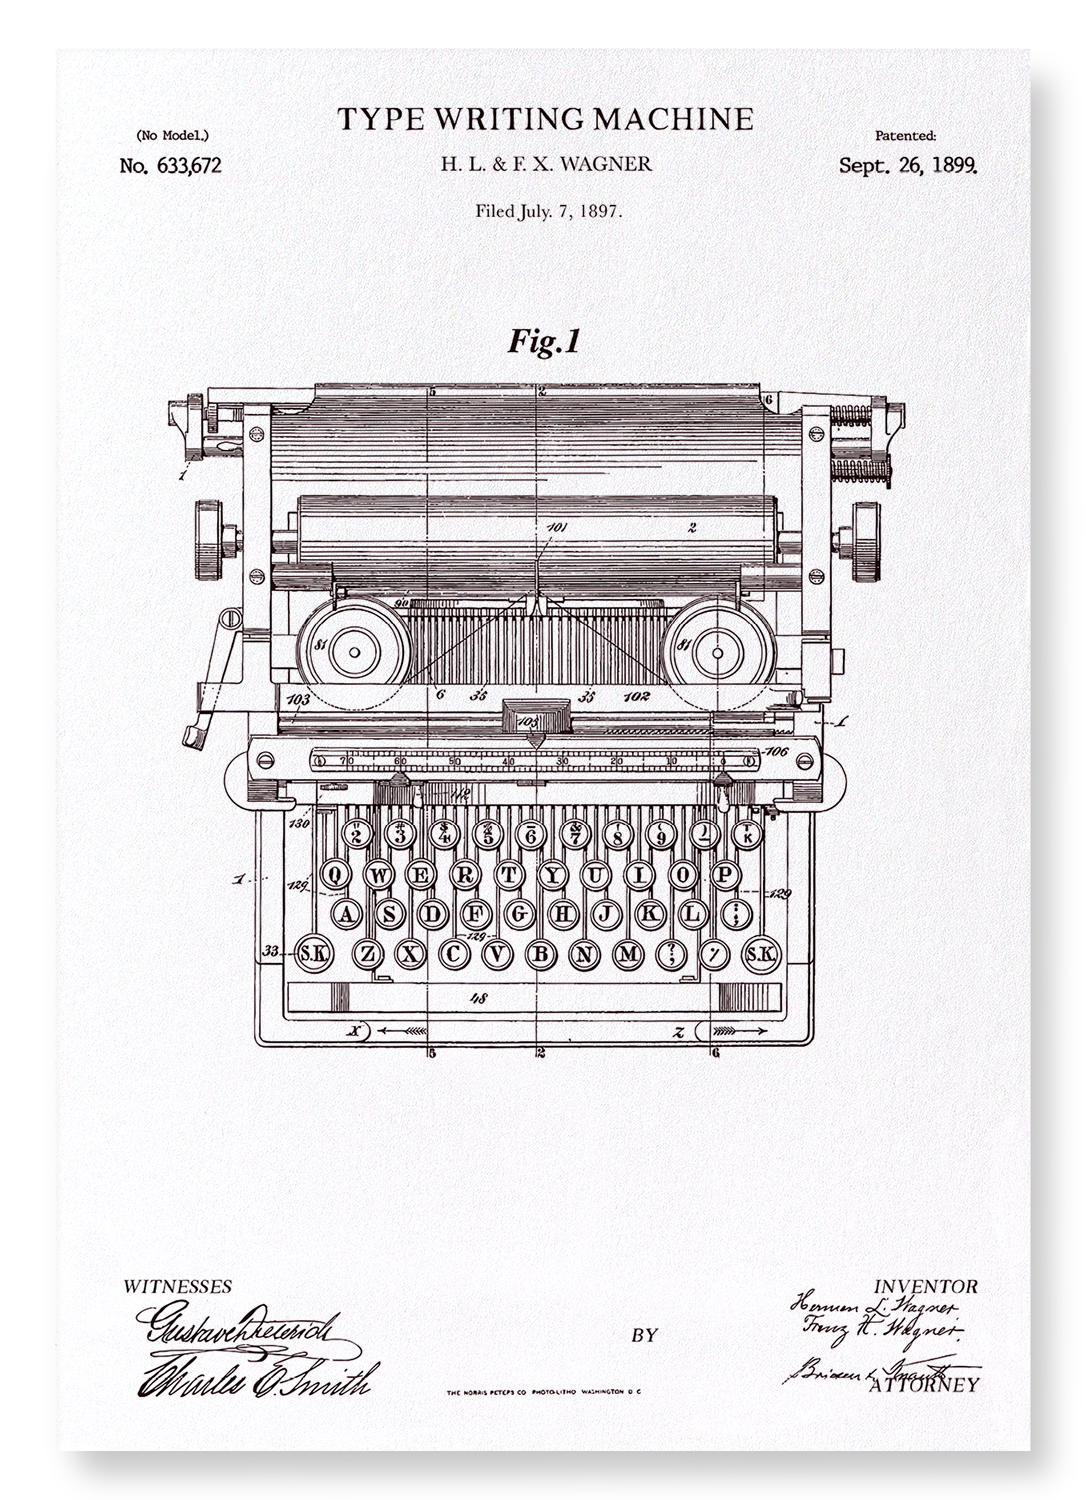 PATENT OF TYPE WRITING MACHINE (1889)